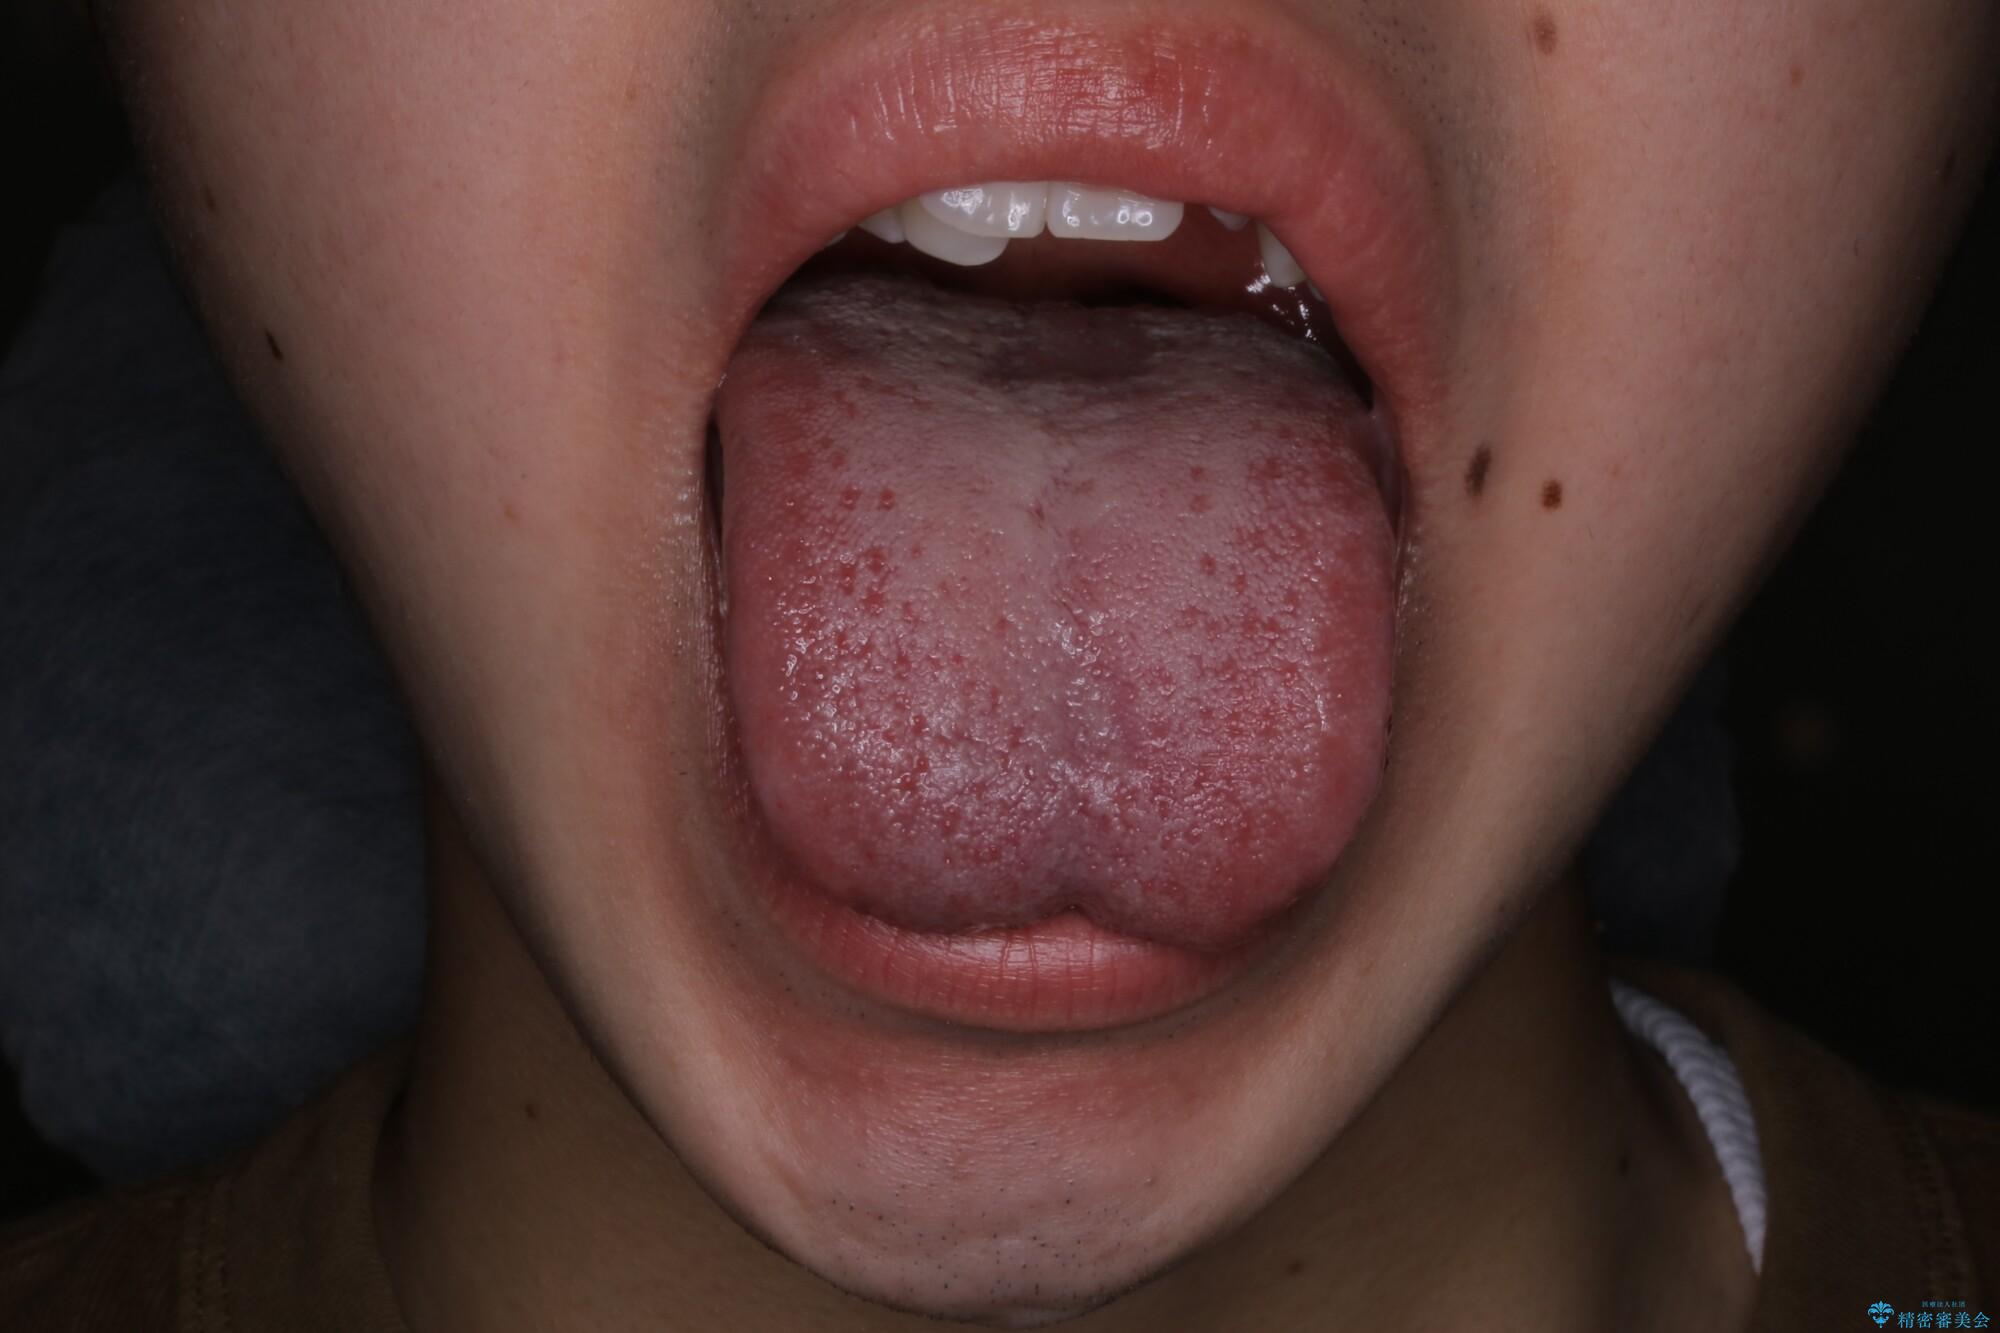 20代男性 矯正治療前に舌小帯切除で滑舌の改善 治療前